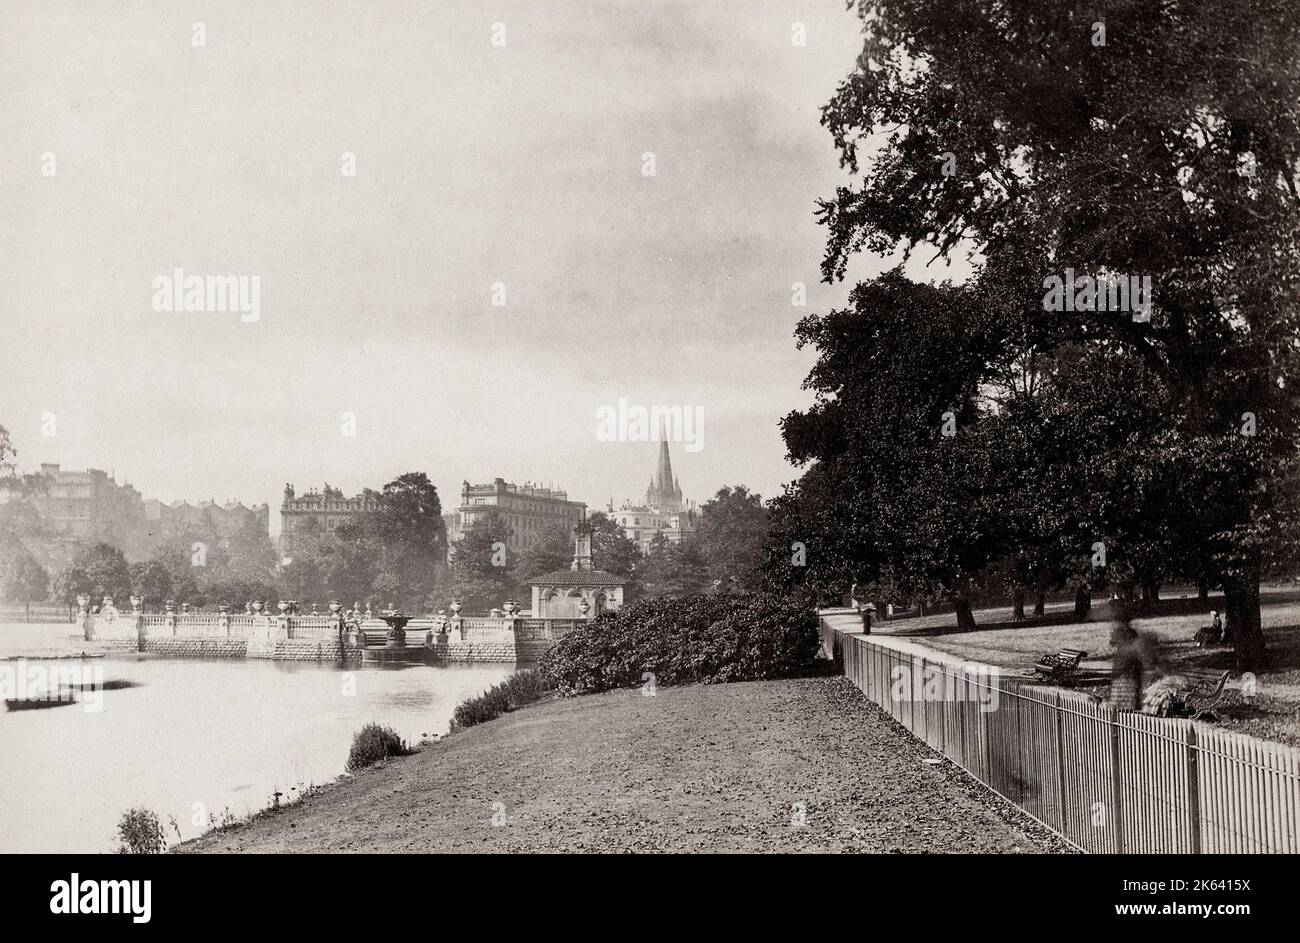 Photographie vintage du 19th siècle: Kensington Park Gardens, Londres Banque D'Images